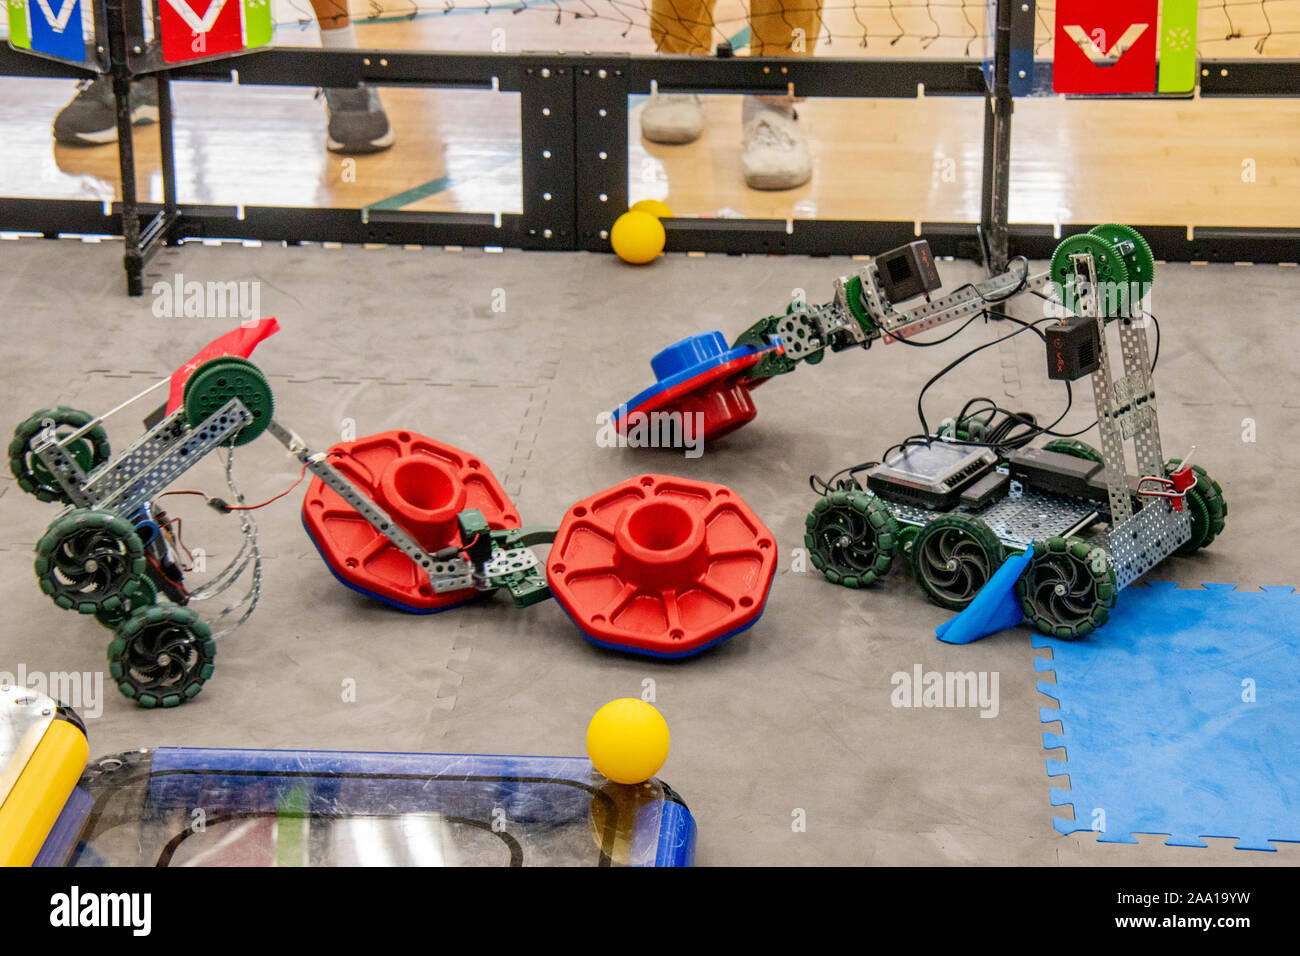 Utilizando sus brazos mecánicos, robots controlados de forma remota realice tareas ritualizada en los puntos de inflexión Arena durante un tallo robótica festival en Costa Mesa, CA, high school. Foto de stock